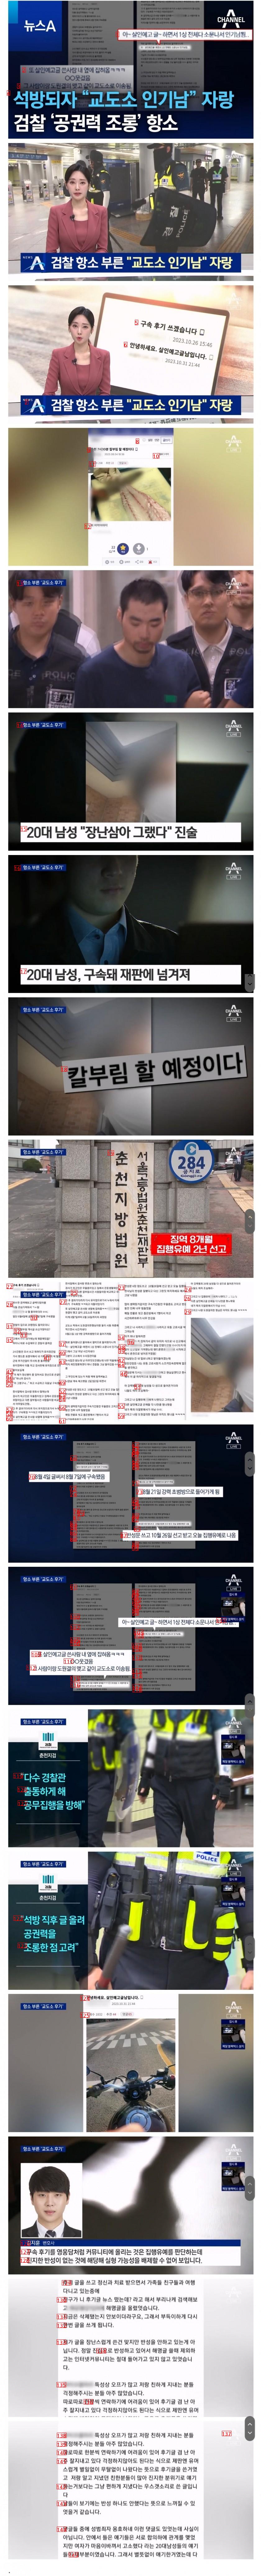 석방되자 “교도소 인기남” 자랑…검찰 ‘공권력 조롱’ 항소